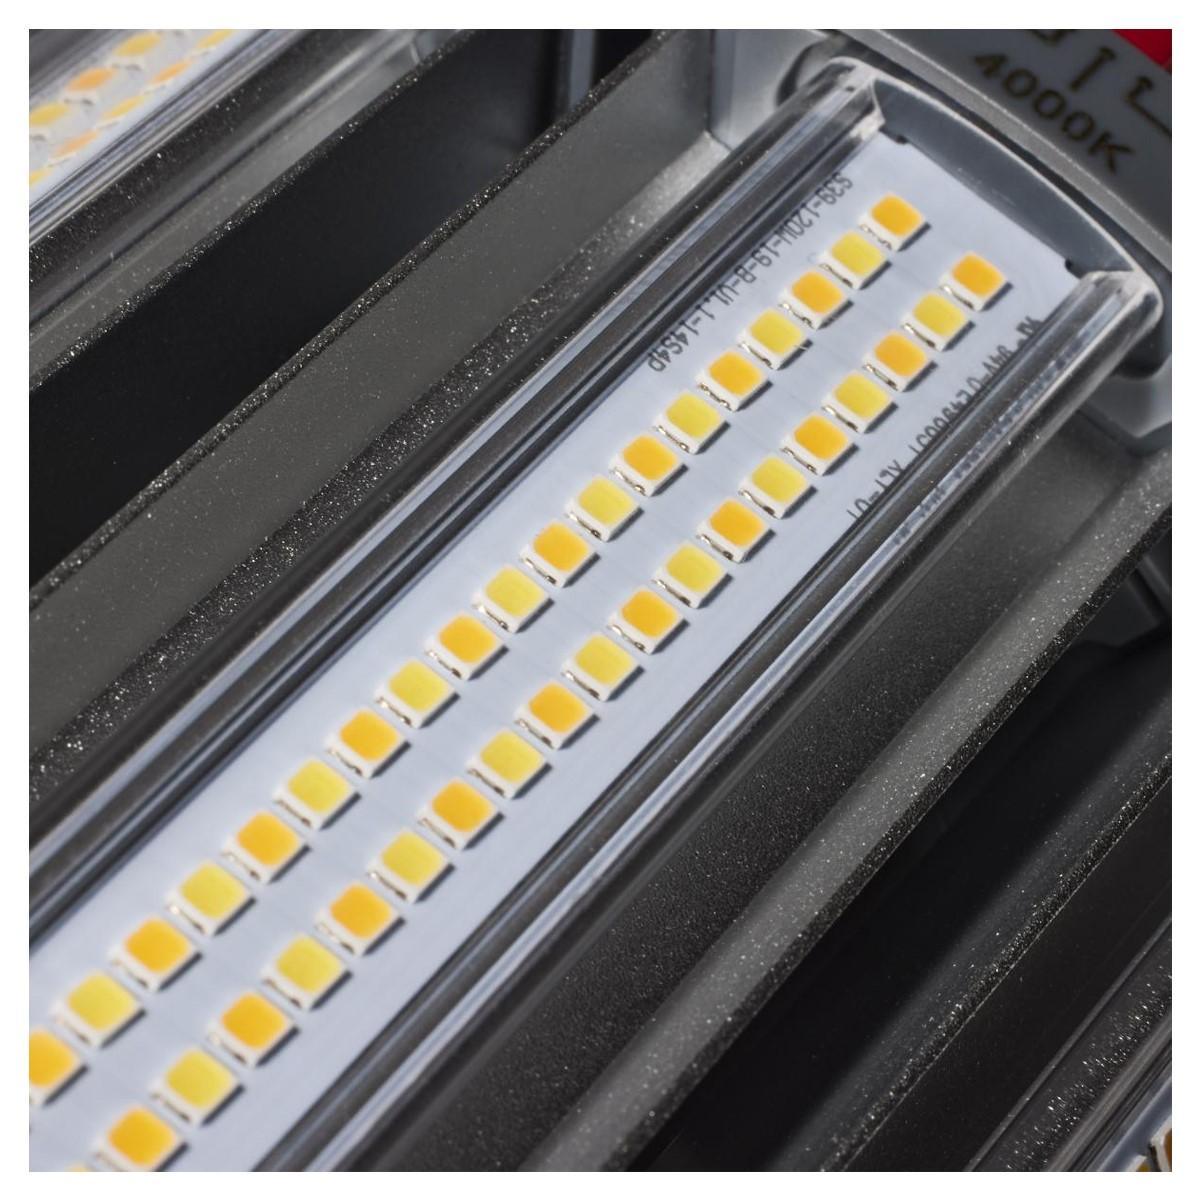 Hi-Pro Retrofit LED Corn Bulb, 120W, 16800 Lumens, Selectable CCT, 30K/40K/50K, EX39 Mogul Extended Base, 120-277V - Bees Lighting